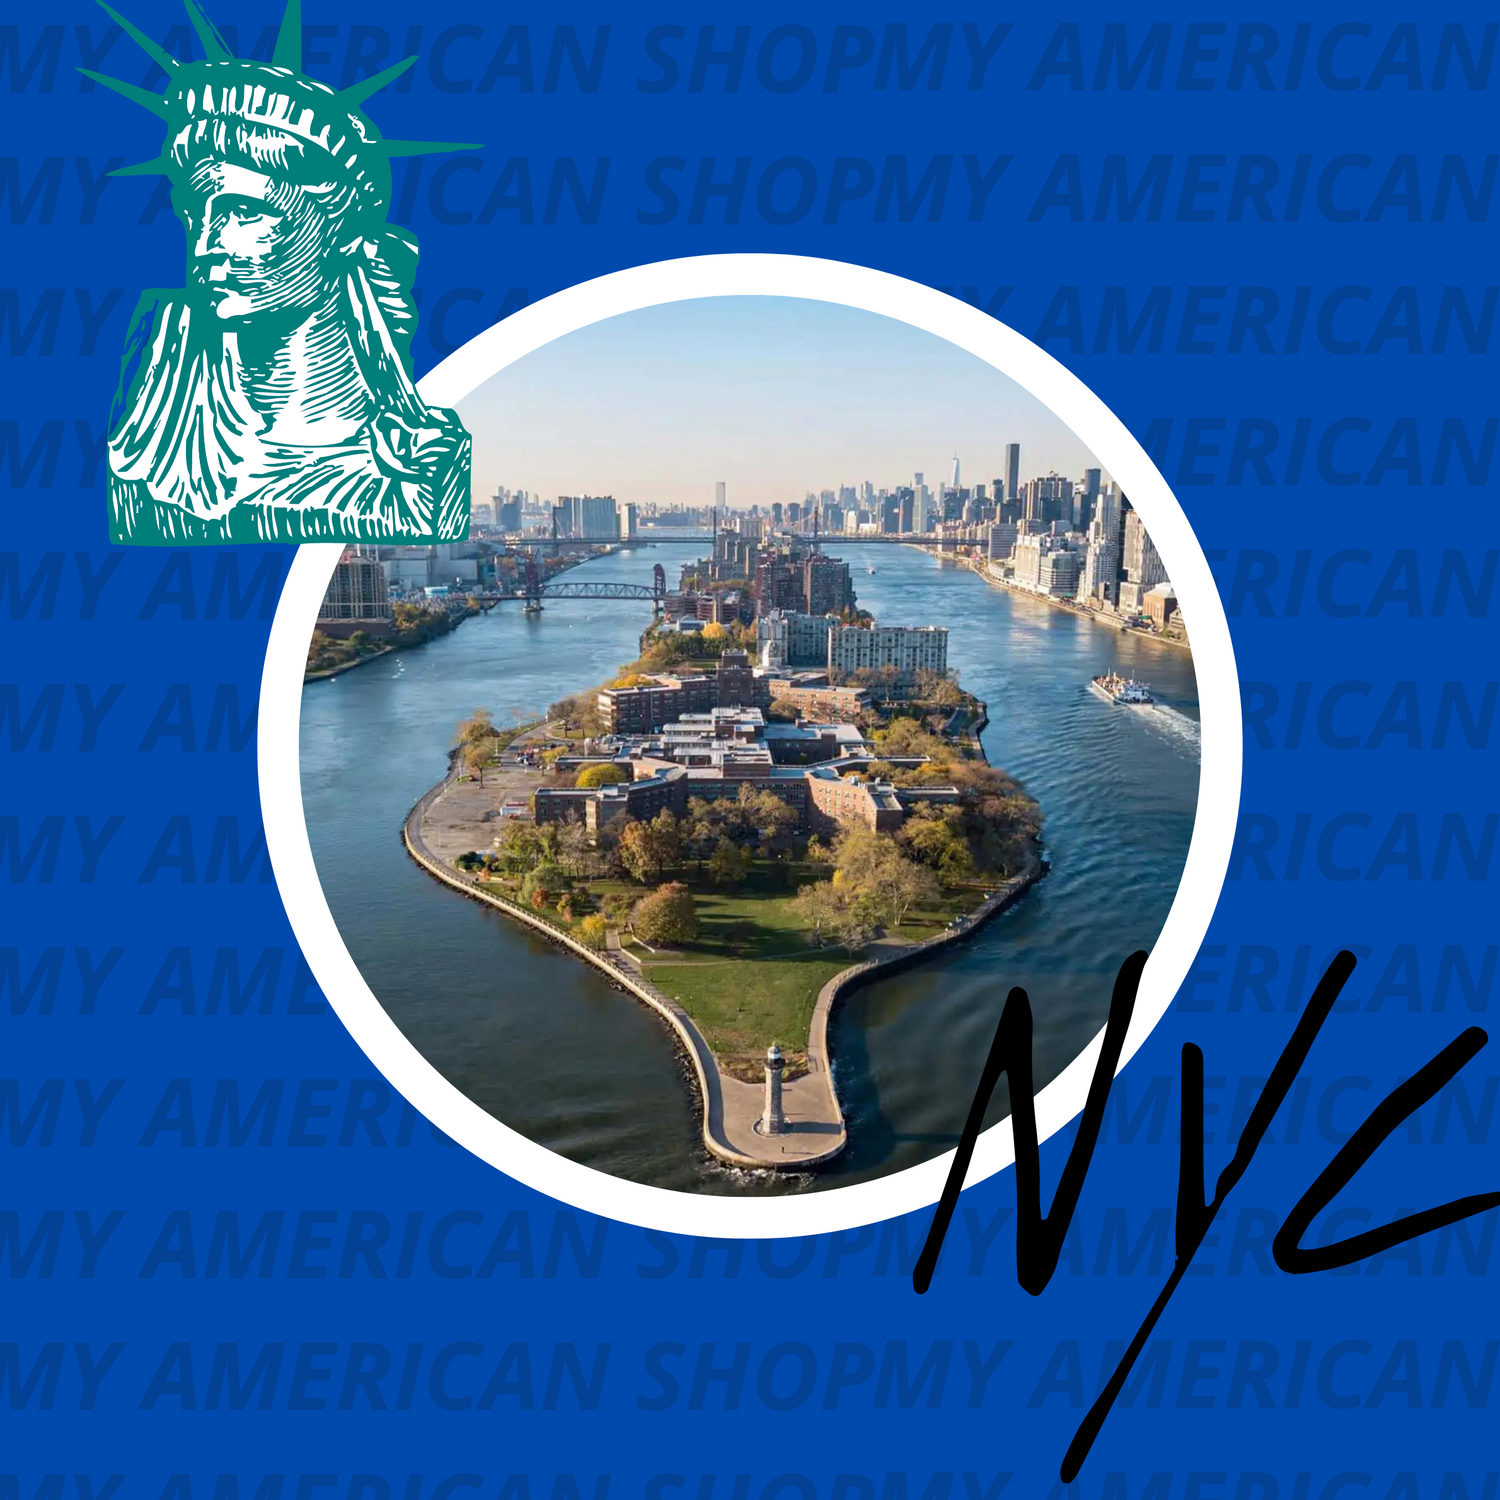 Découvrez le joyau caché de New York : L'exploration de Roosevelt Island !